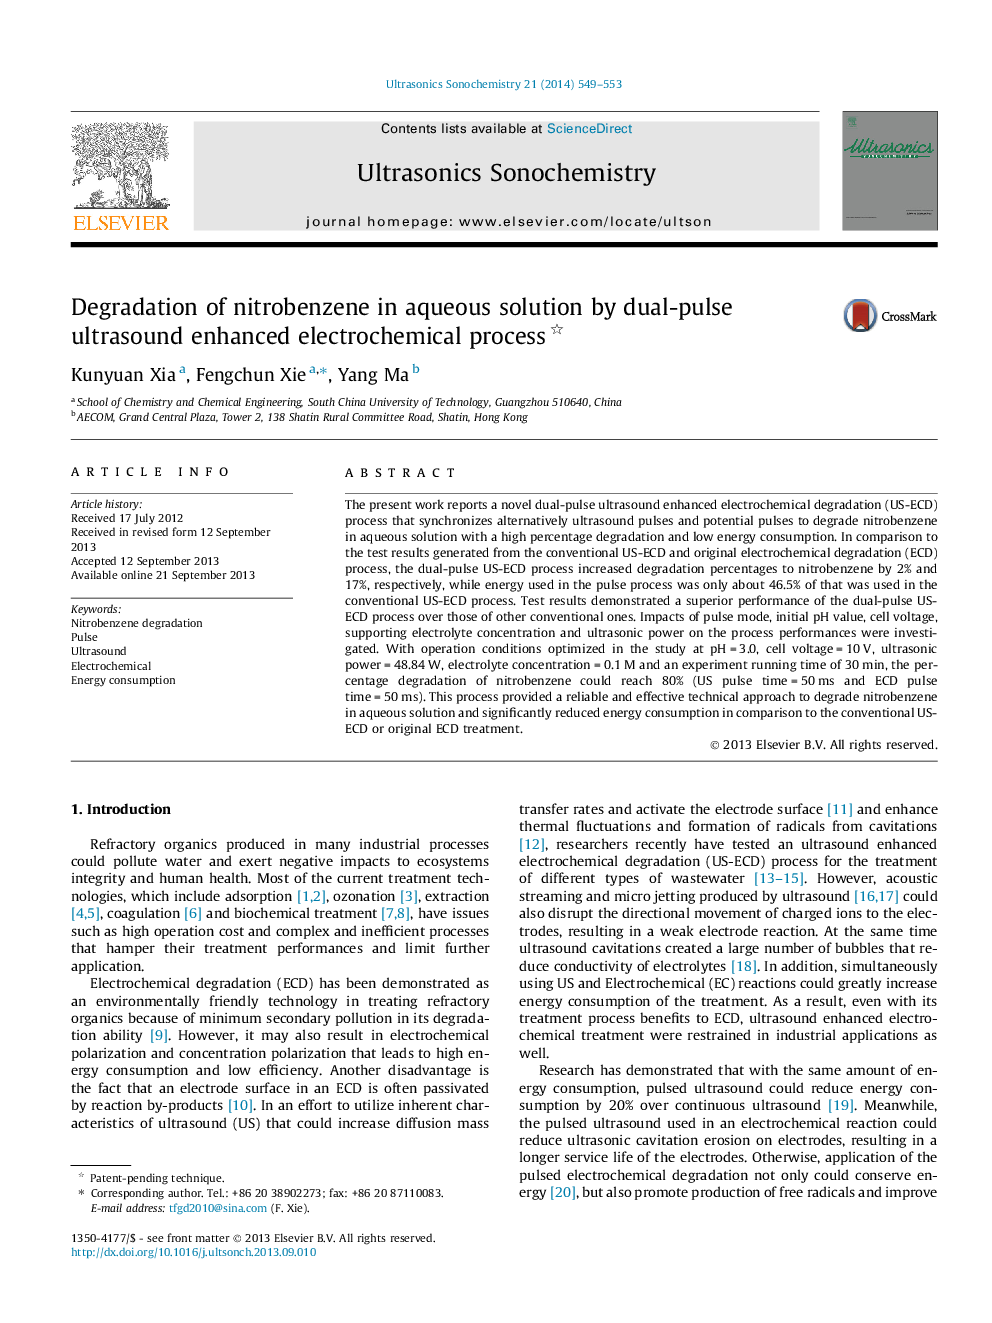 تخریب نیتروبنزل در محلول آبی با روش اولتراسوند دو پالس، فرآیند الکتروشیمیایی افزایش یافته است. 